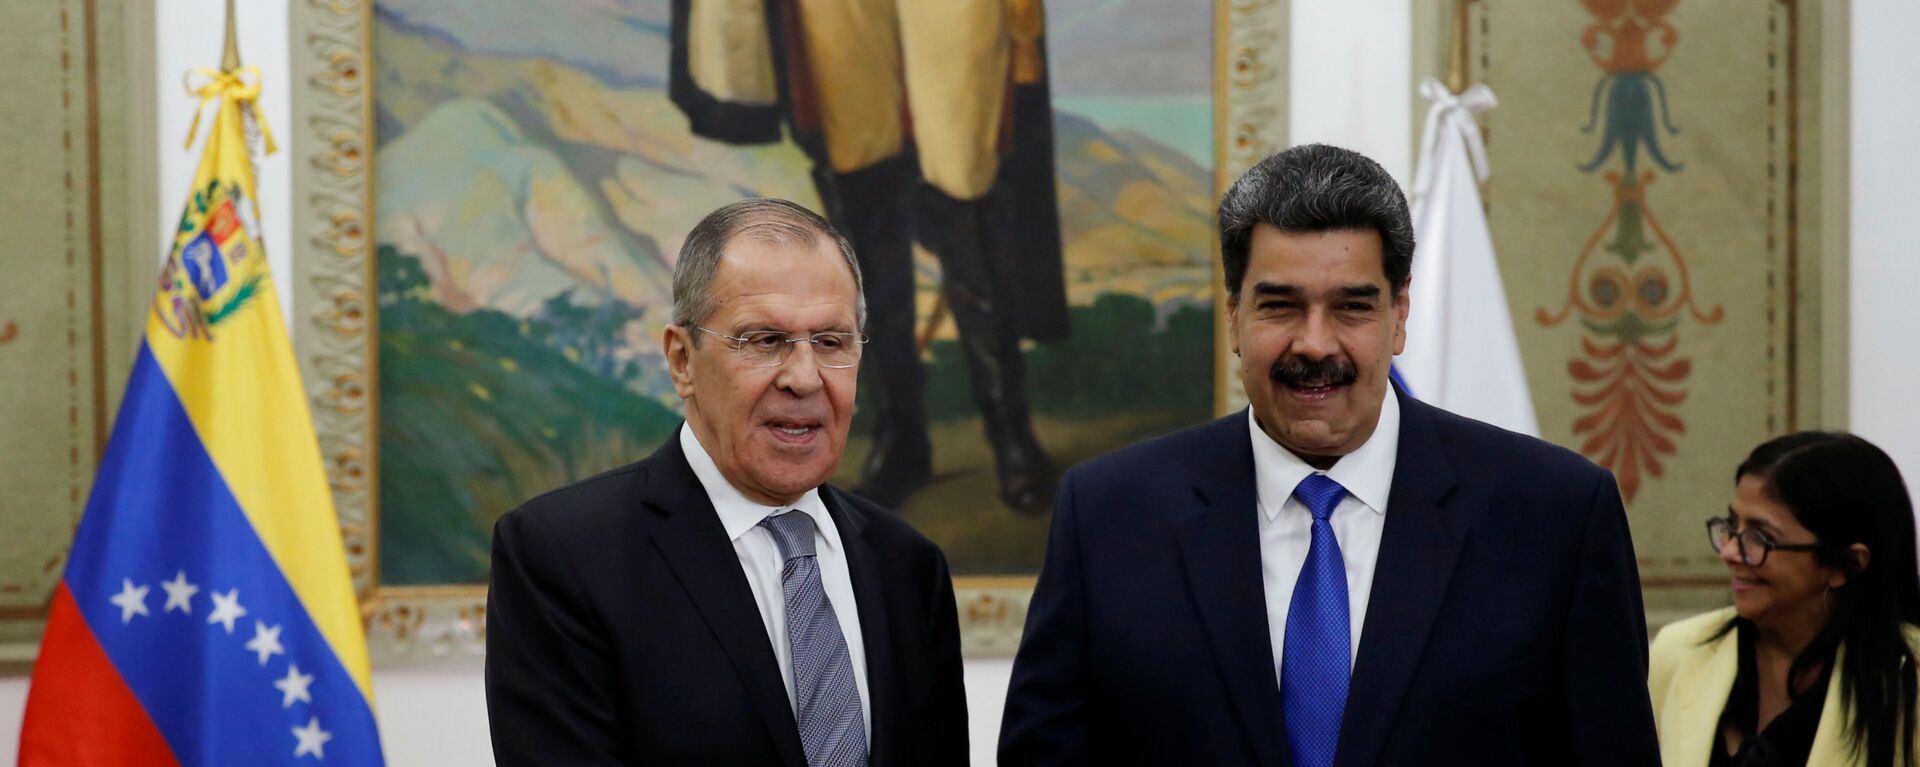 Ministro russo Sergei Lavrov se encontra com o presidente venezuelano Nicolás Maduro em Caracas - Sputnik Brasil, 1920, 07.02.2020